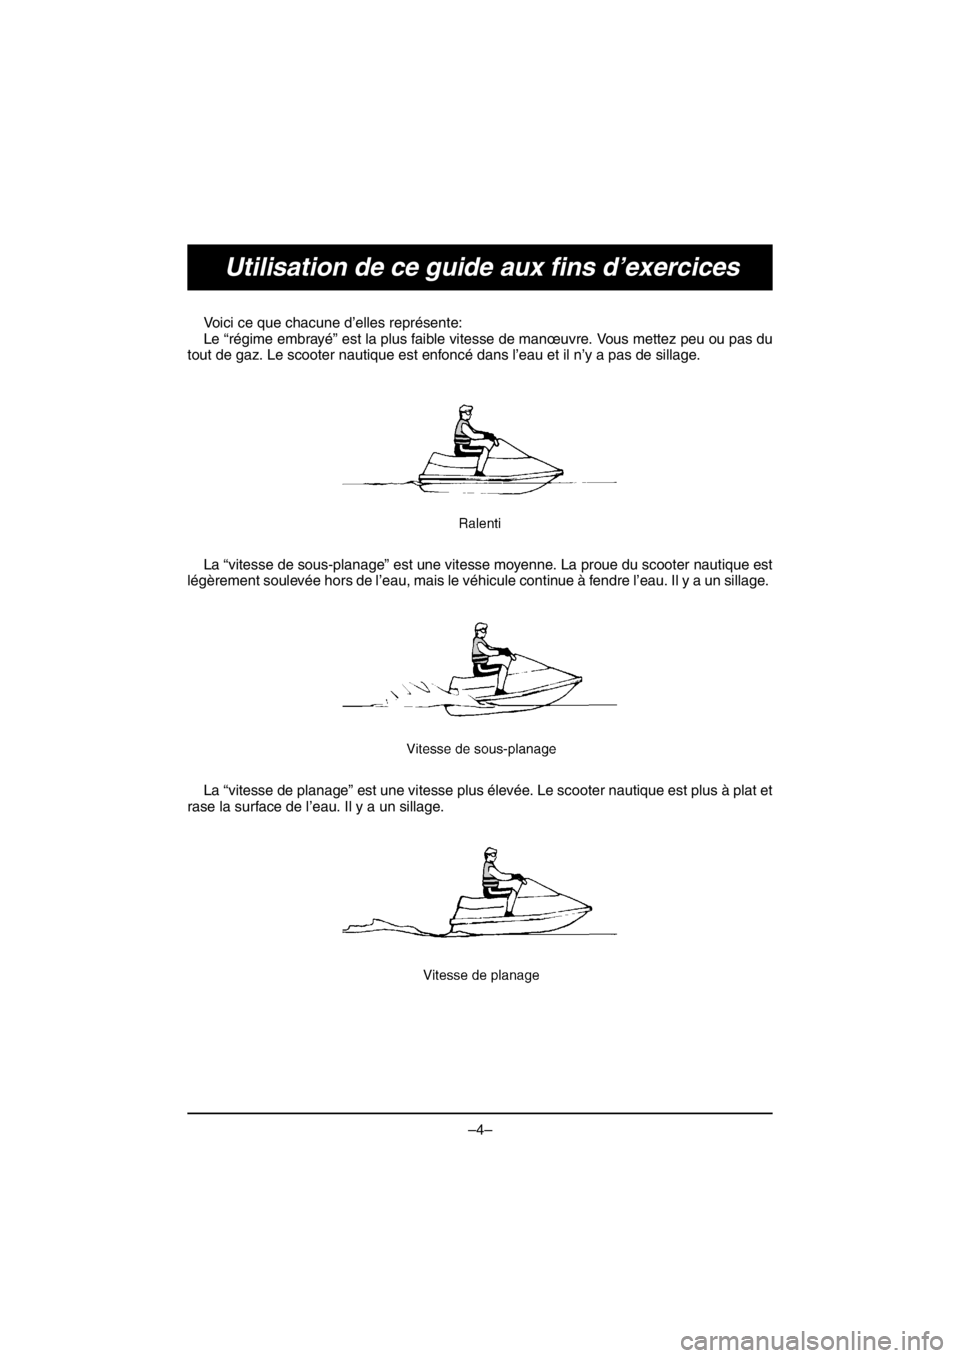 YAMAHA V1 2016  Manuale duso (in Italian) –4–
Utilisation de ce guide aux fins d’exercices
Voici ce que chacune d’elles représente: 
Le “régime embrayé” est la plus faible vitesse de manœuvre. Vous mettez peu ou pas du
tout de